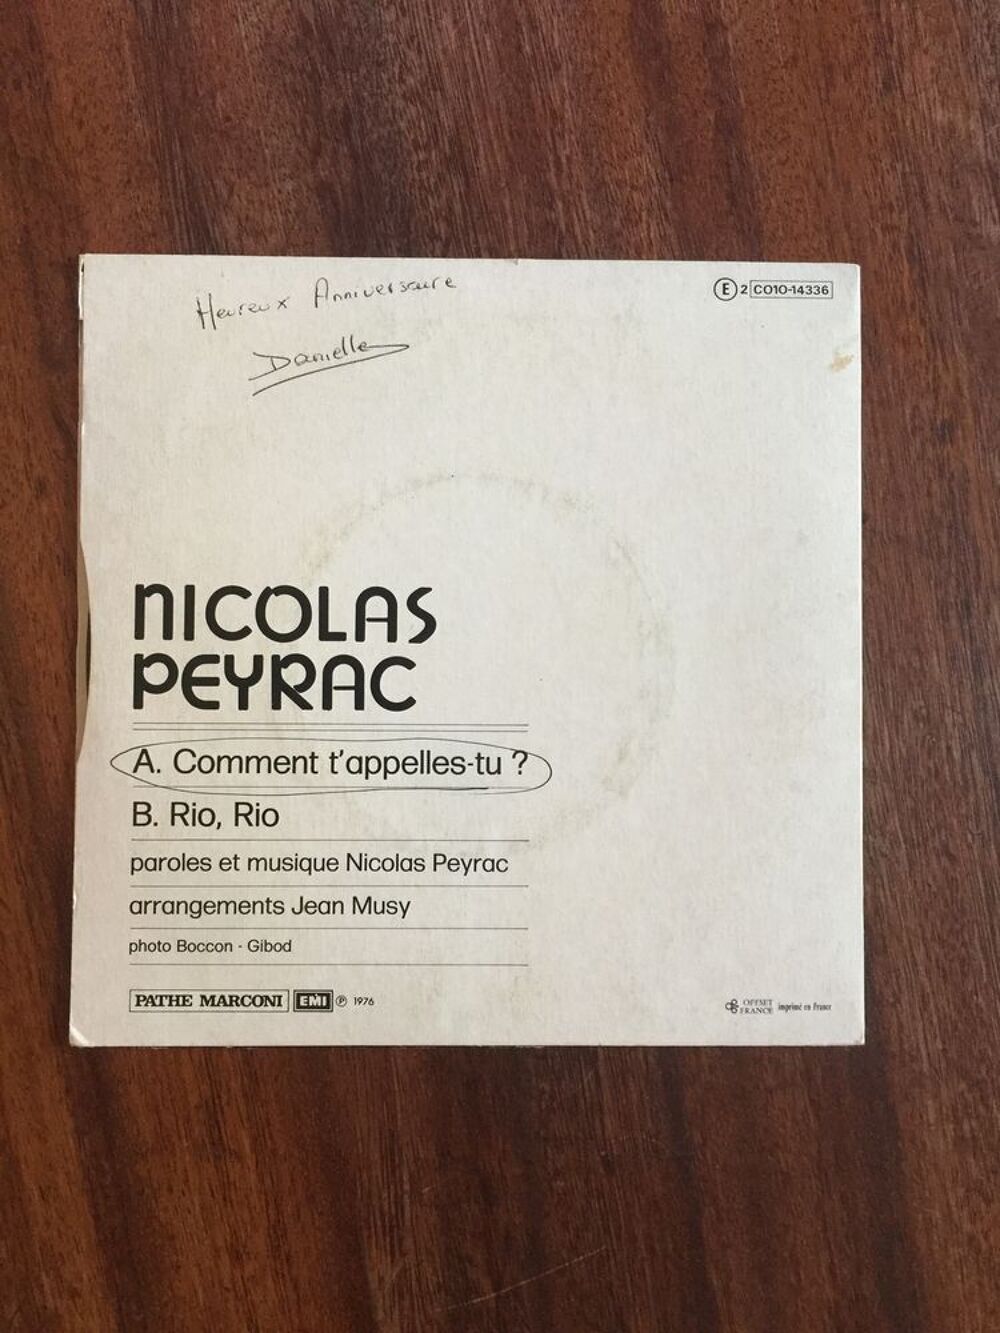 Vinyle 45 tours Nicolas Peyrac &quot; Comment t' appelles CD et vinyles